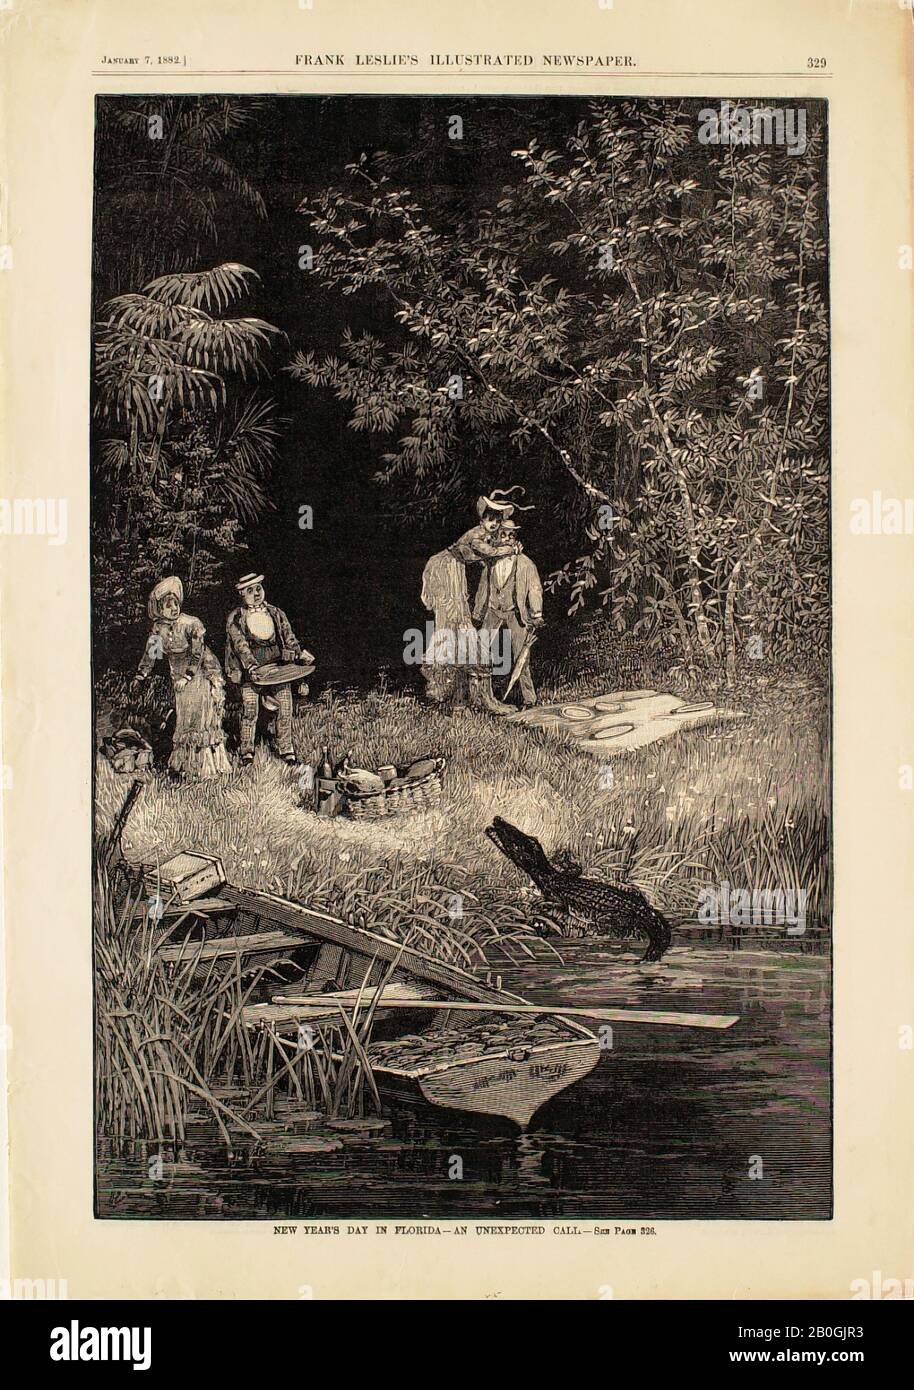 Inconnu, jour du nouvel an en Floride—un appel Inattendu, Du journal Illustré de Frank Leslie, 1882, gravure sur papier, image : 14 3/16 x 9 1/4 in. (36 x 23,5 cm Banque D'Images